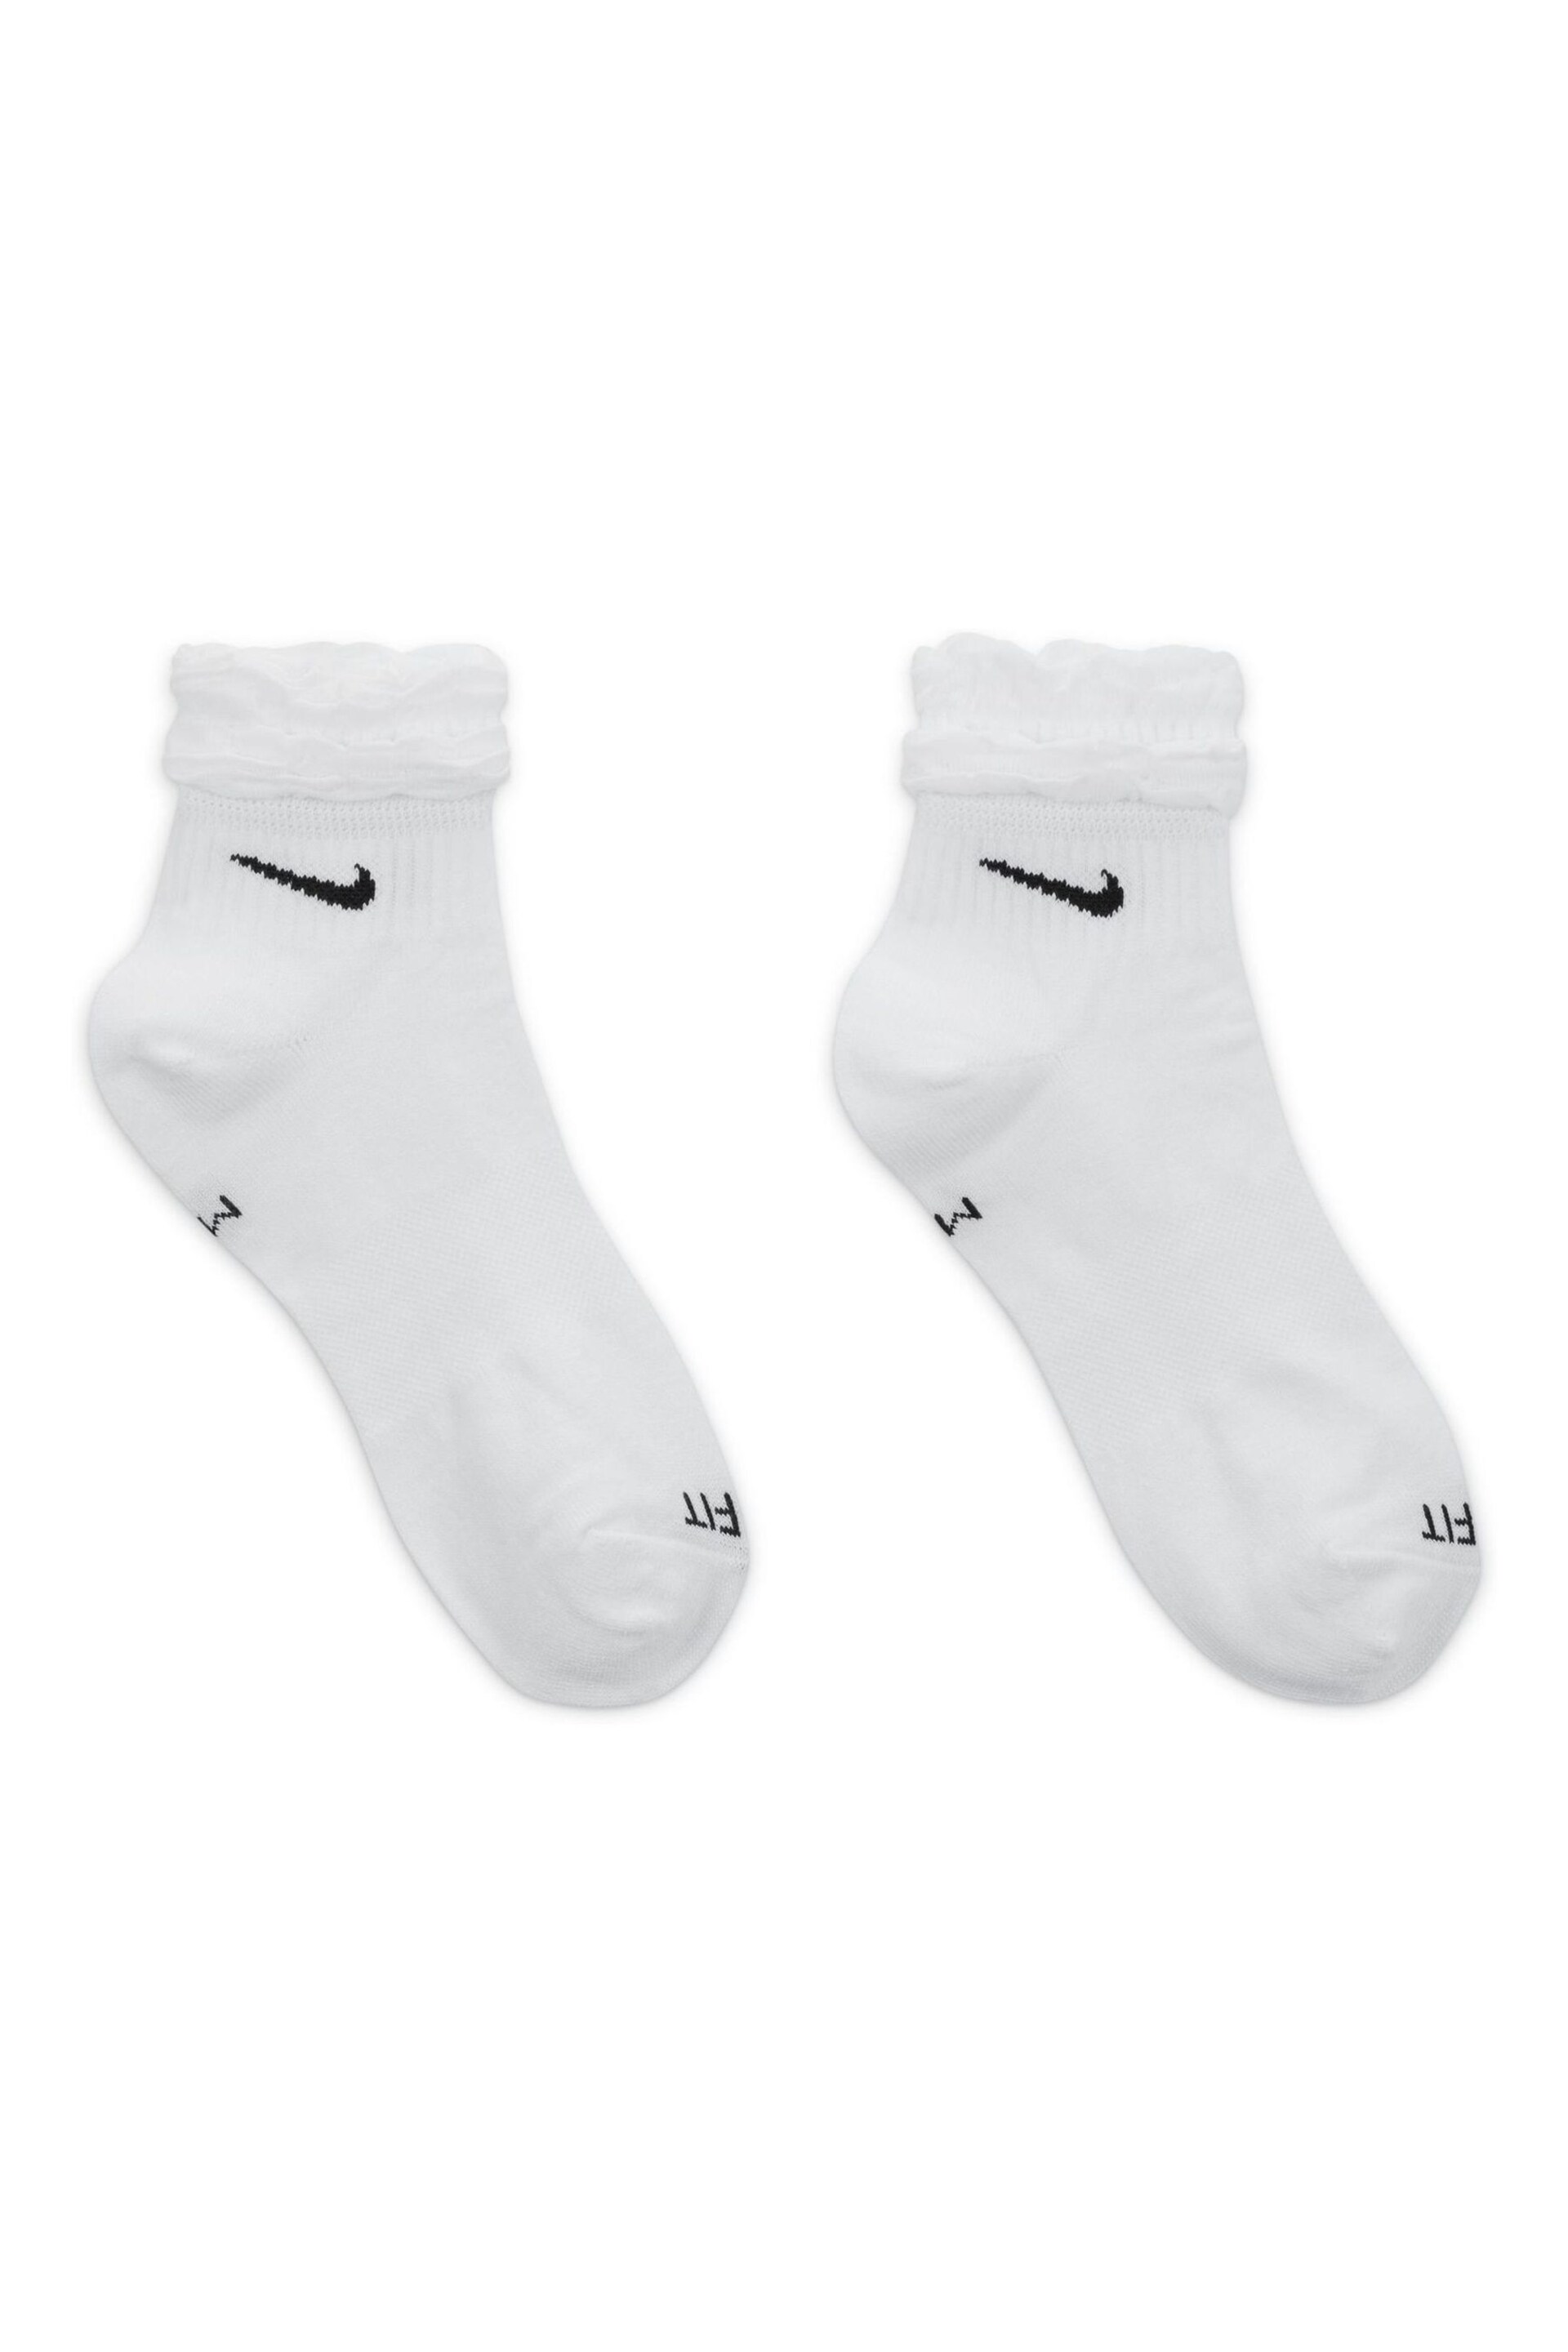 Nike White Everyday Ruffle Ankle Socks - Image 2 of 4